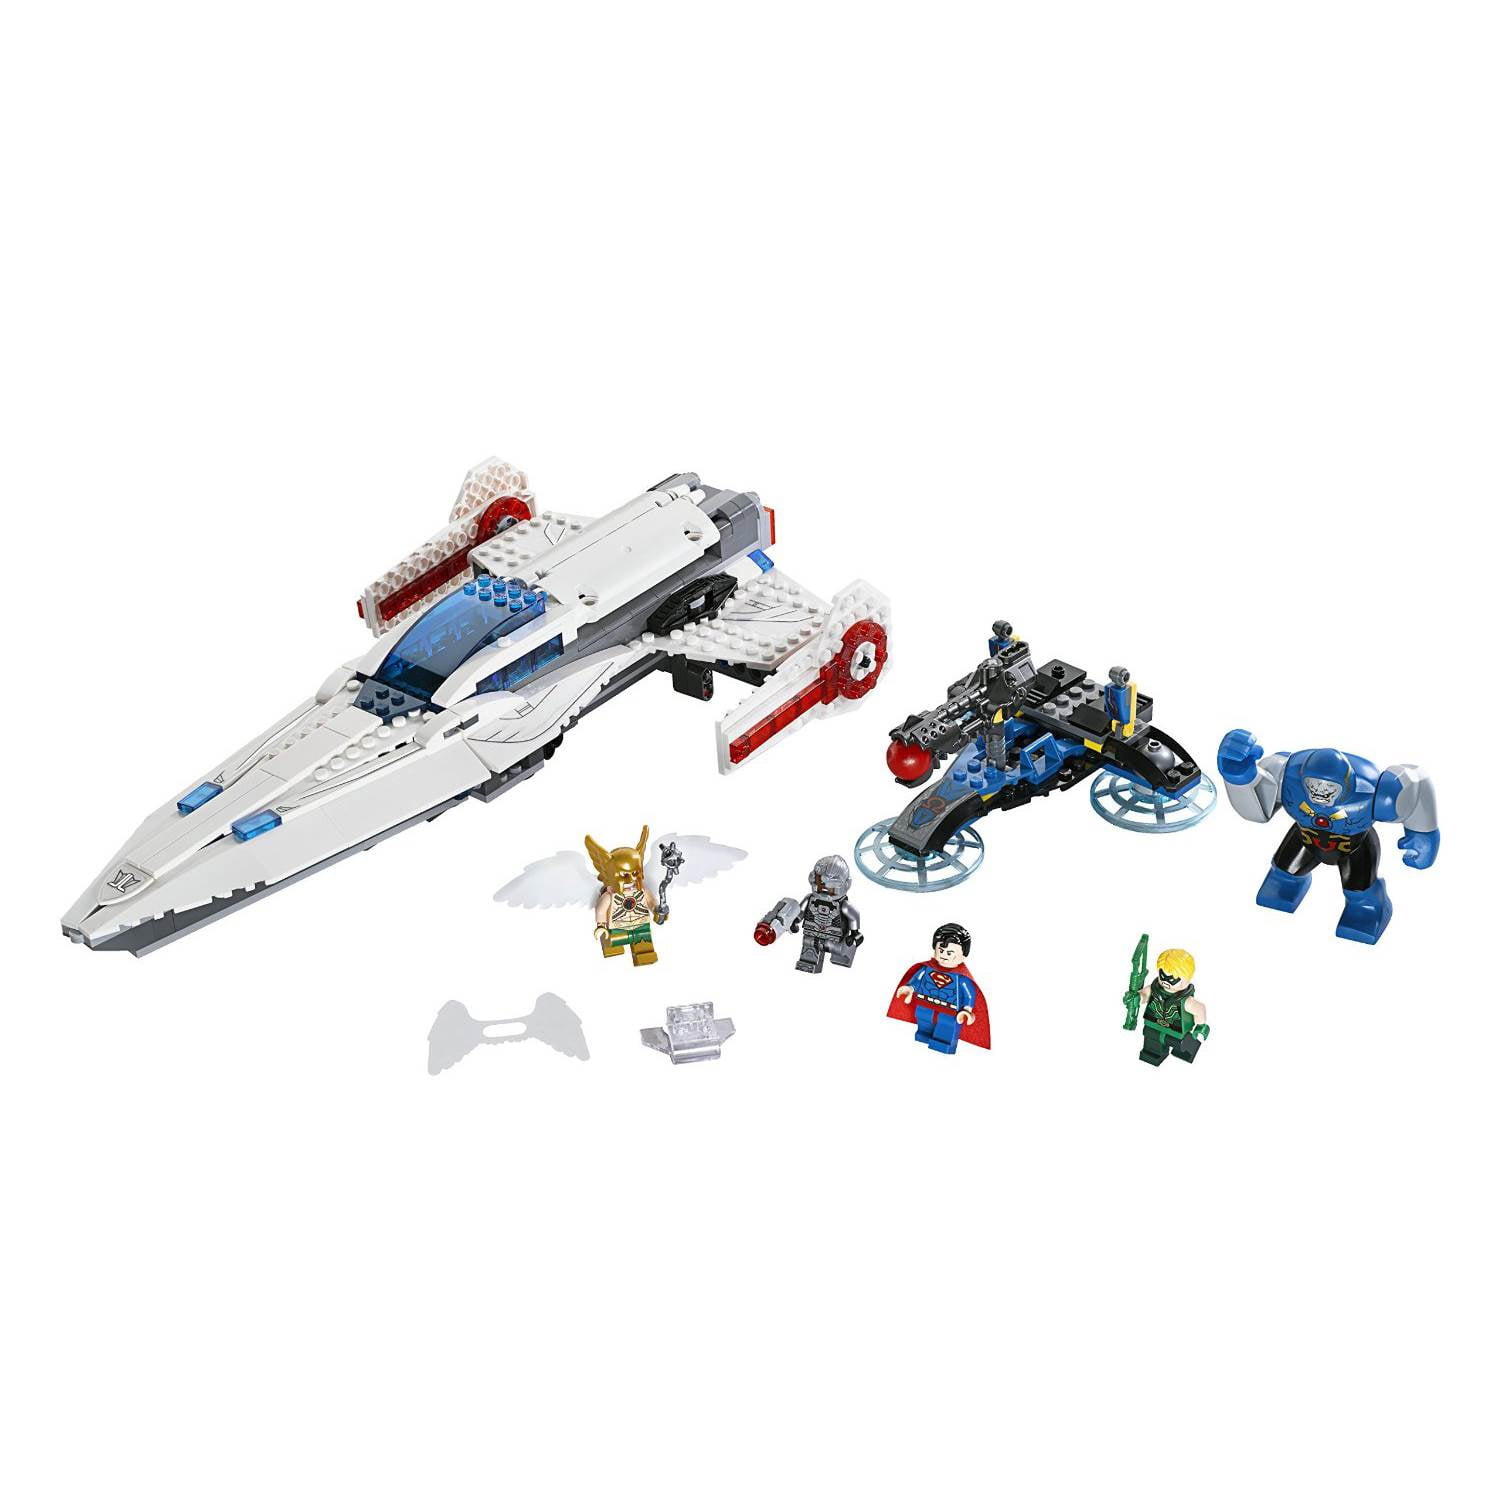 Kan ligevægt Wade LEGO Super Heroes Darkseid Invasion - Walmart.com